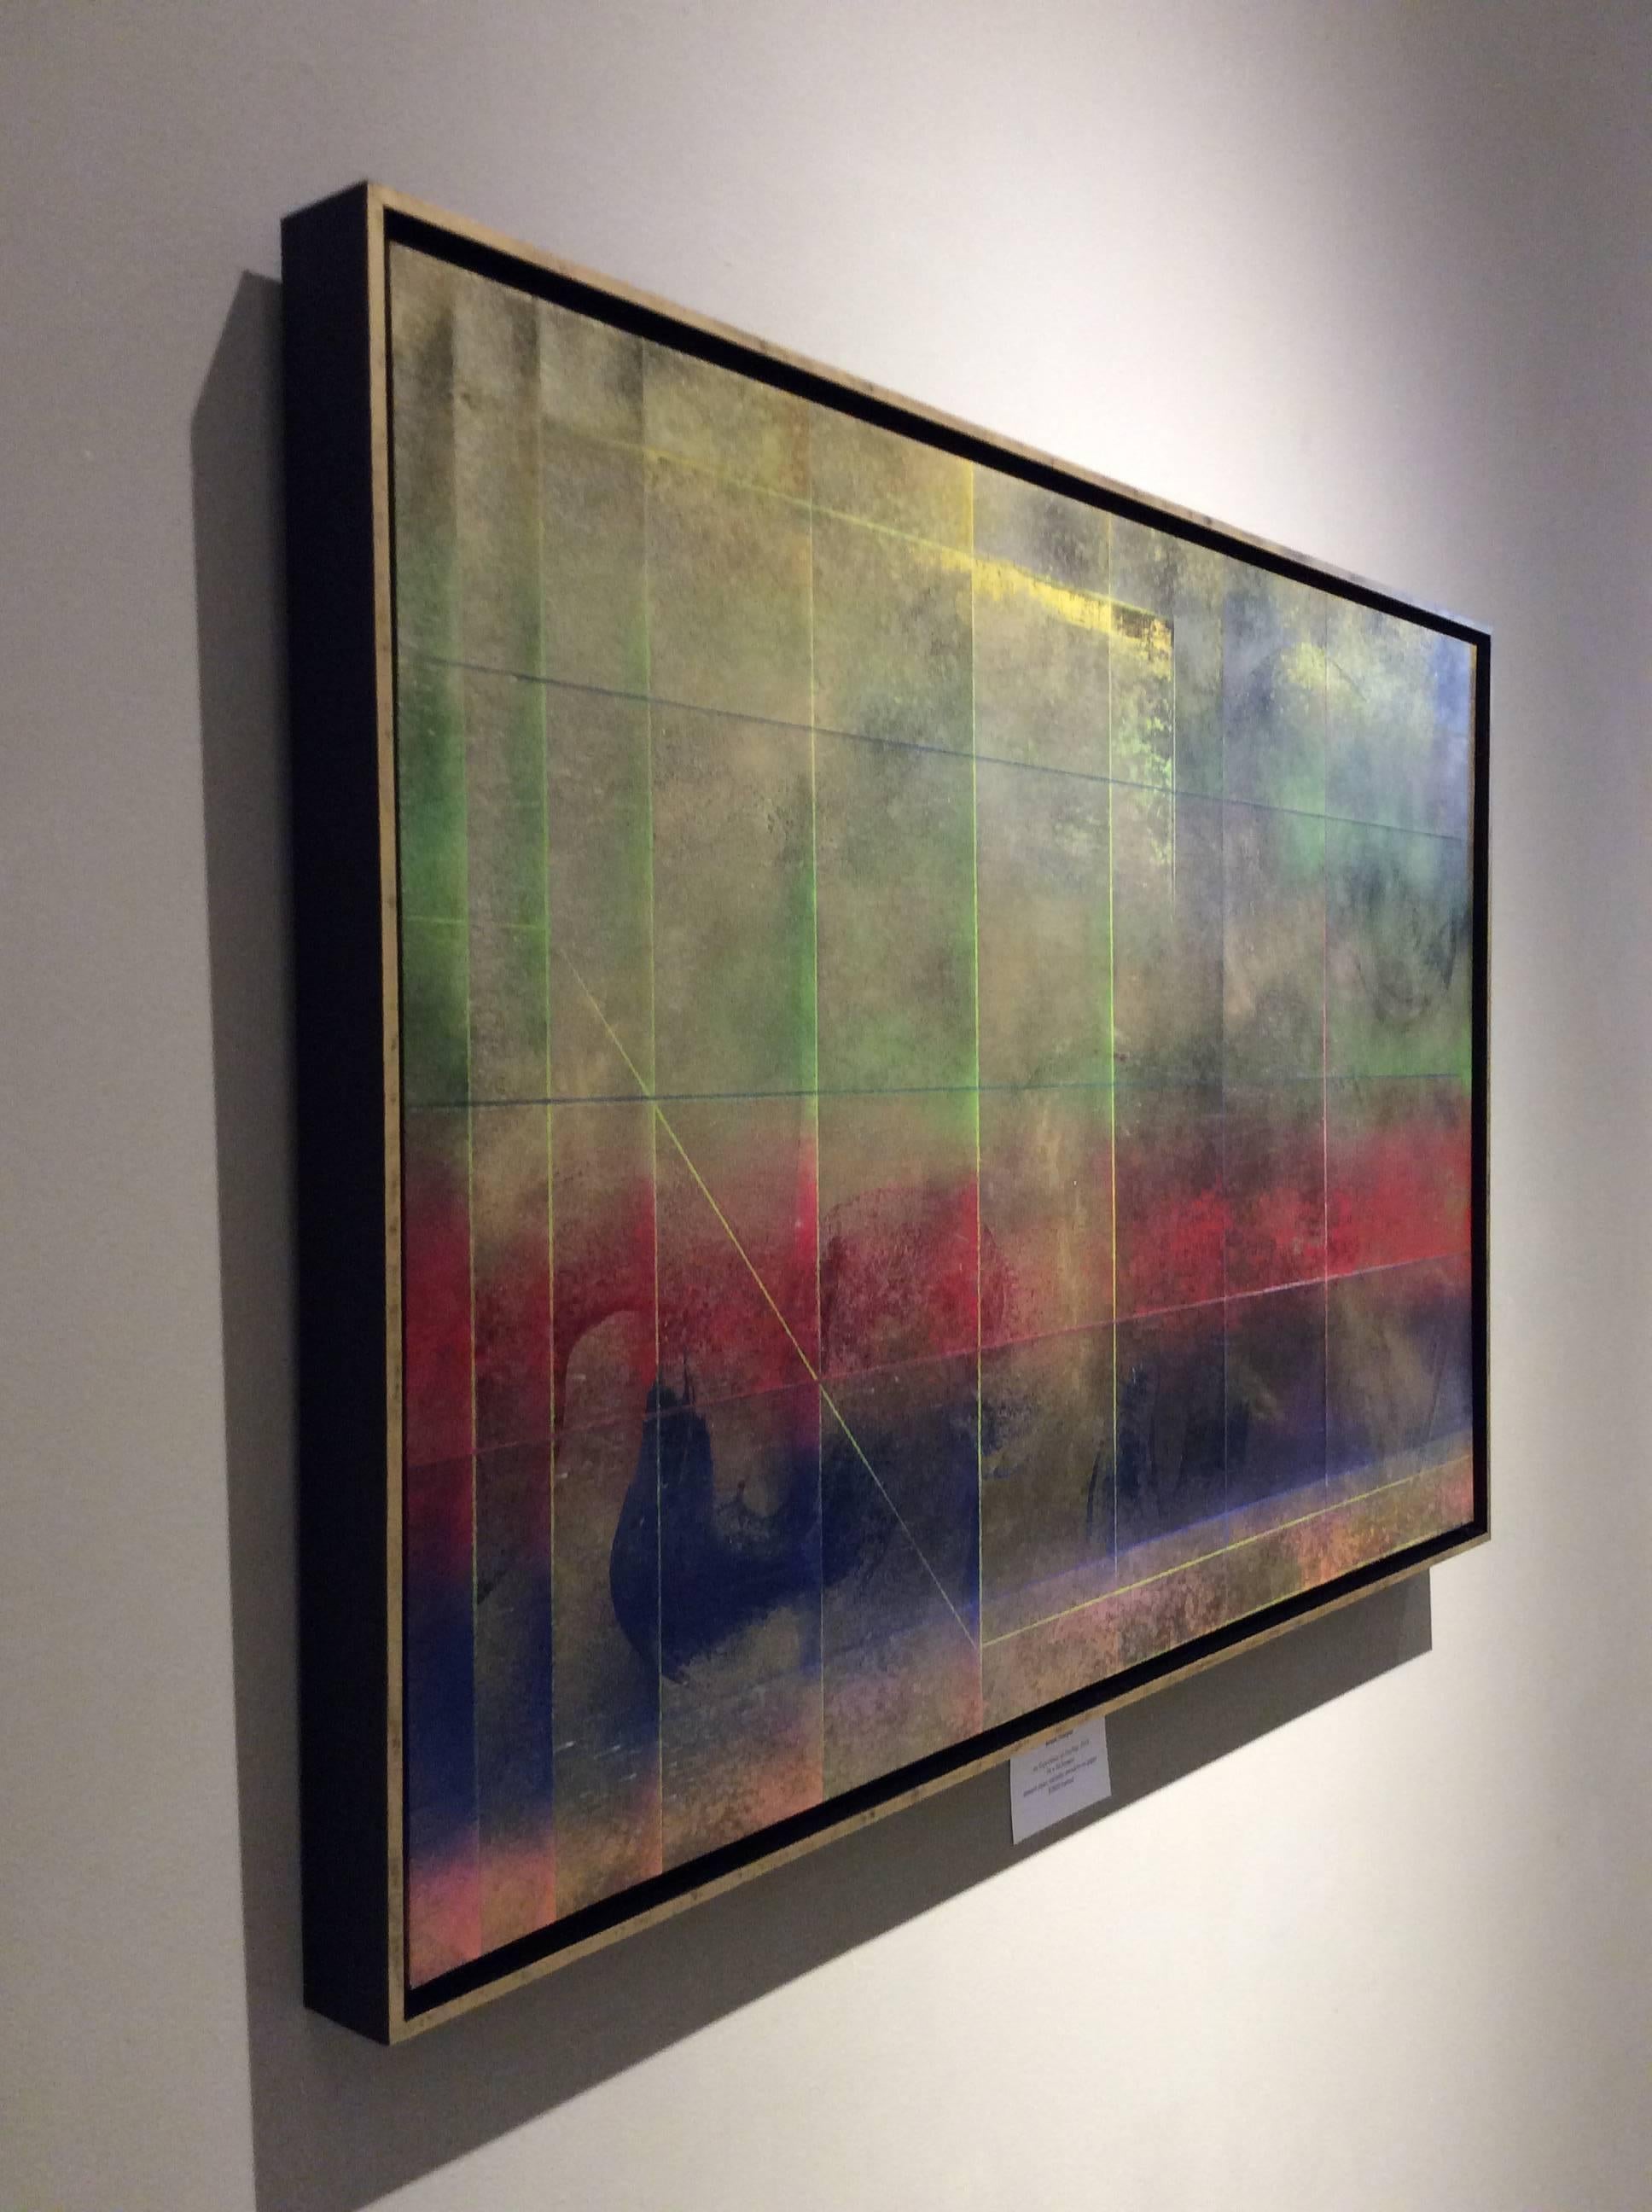 Une expérience de la sensation (peinture abstraite gestuelle colorée et métallique) - Painting de Bruce Murphy